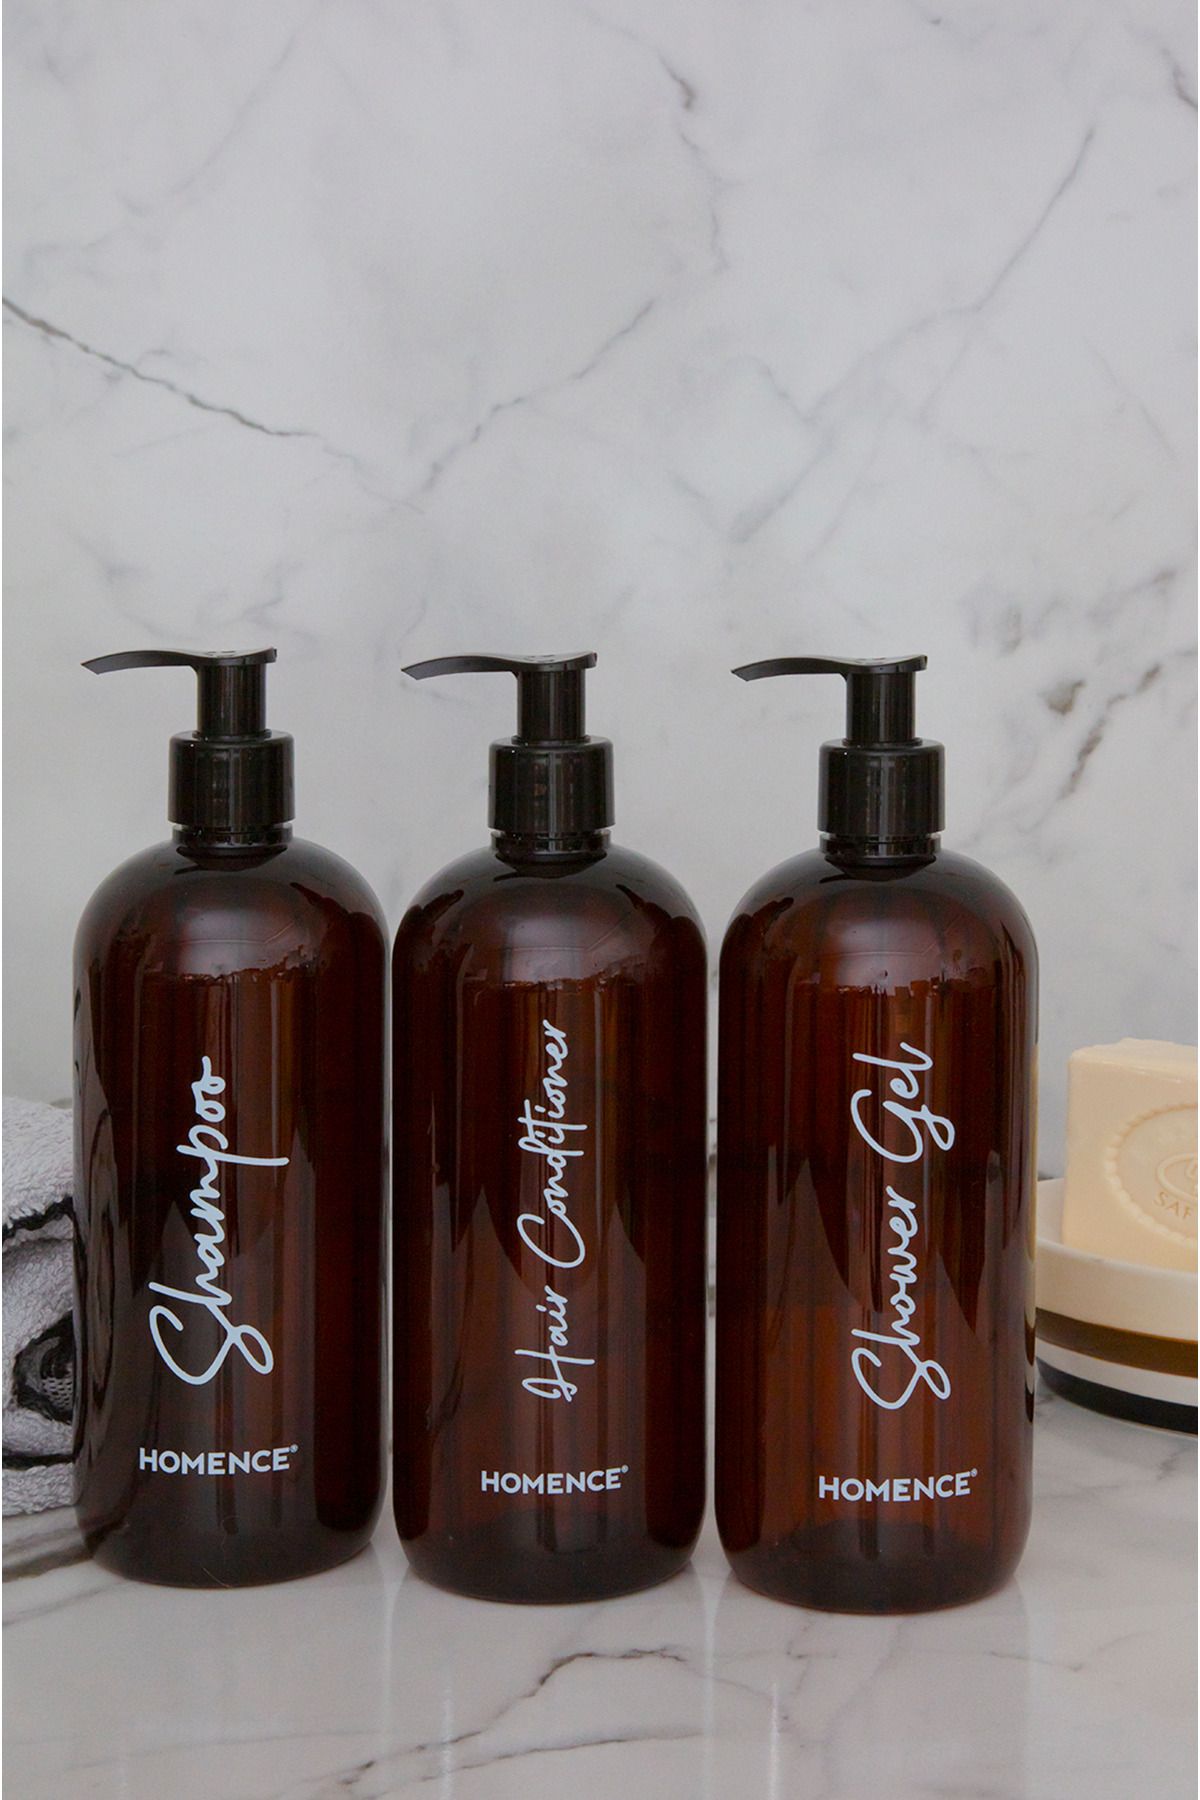 homence Şampuan Duş Jeli Saç Kremi Baskılı Plastik Şişe Banyo Seti 3'lü Amber Sabunluk 500 ml